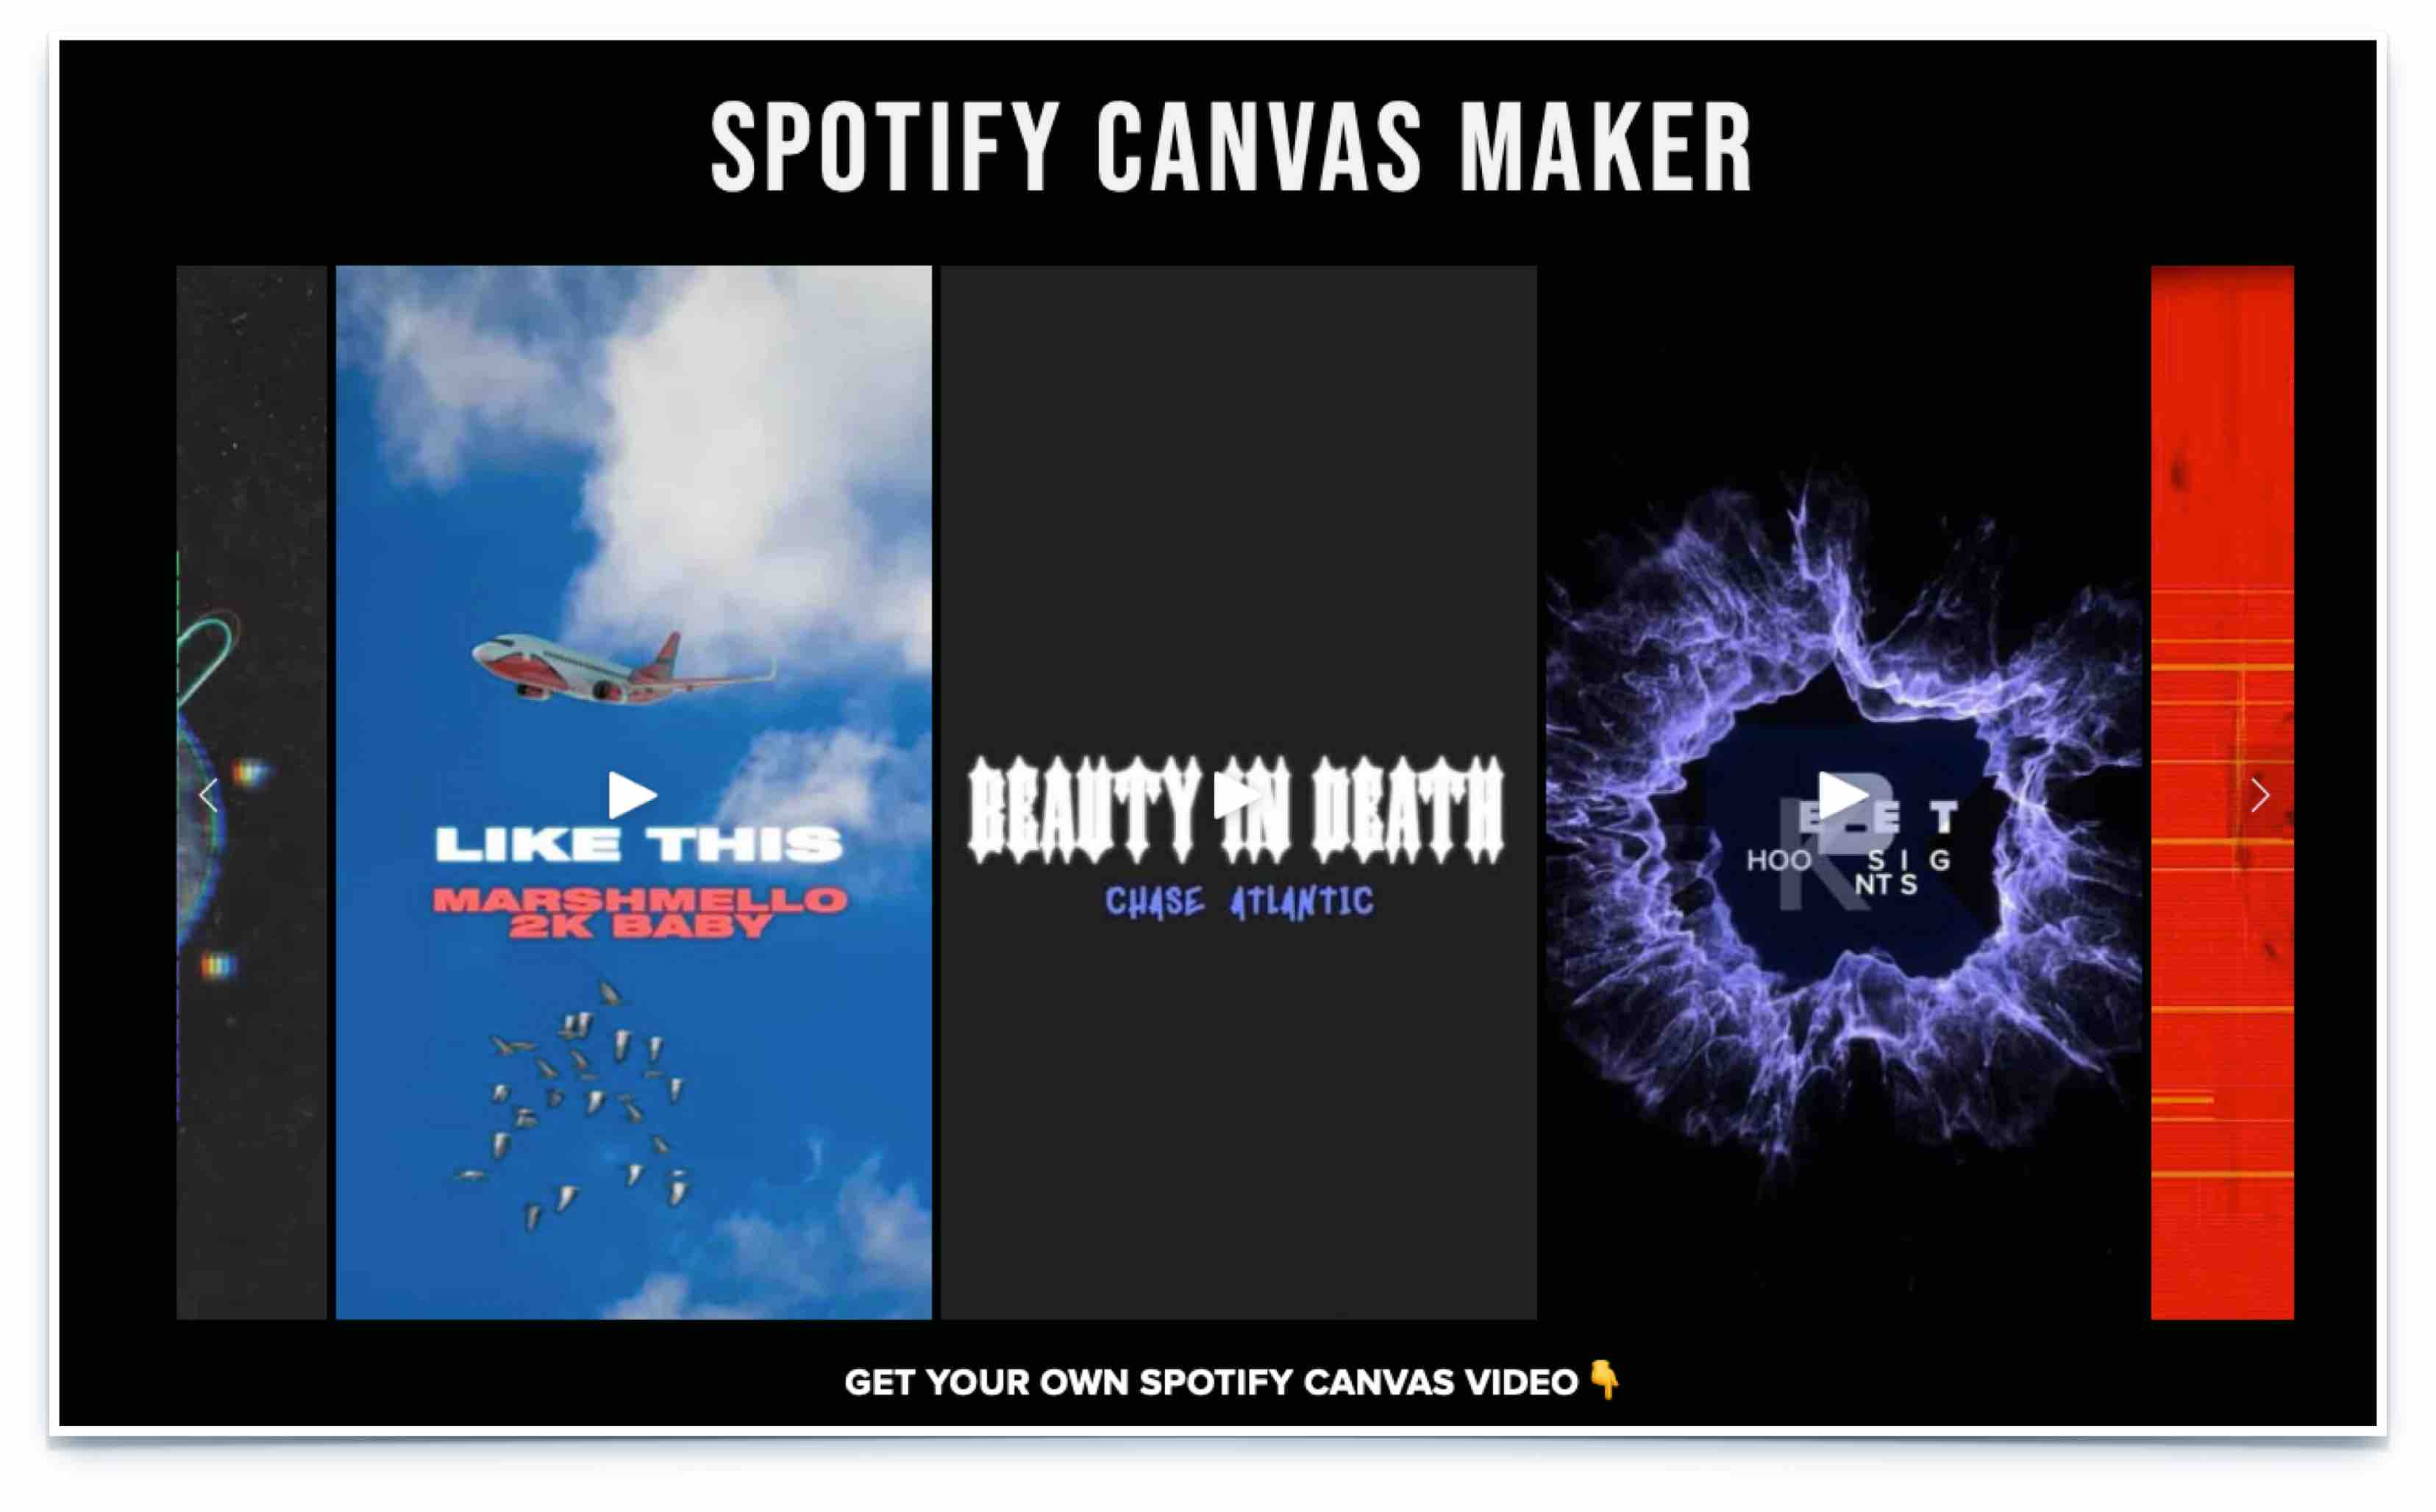 Spotify Canvas maker